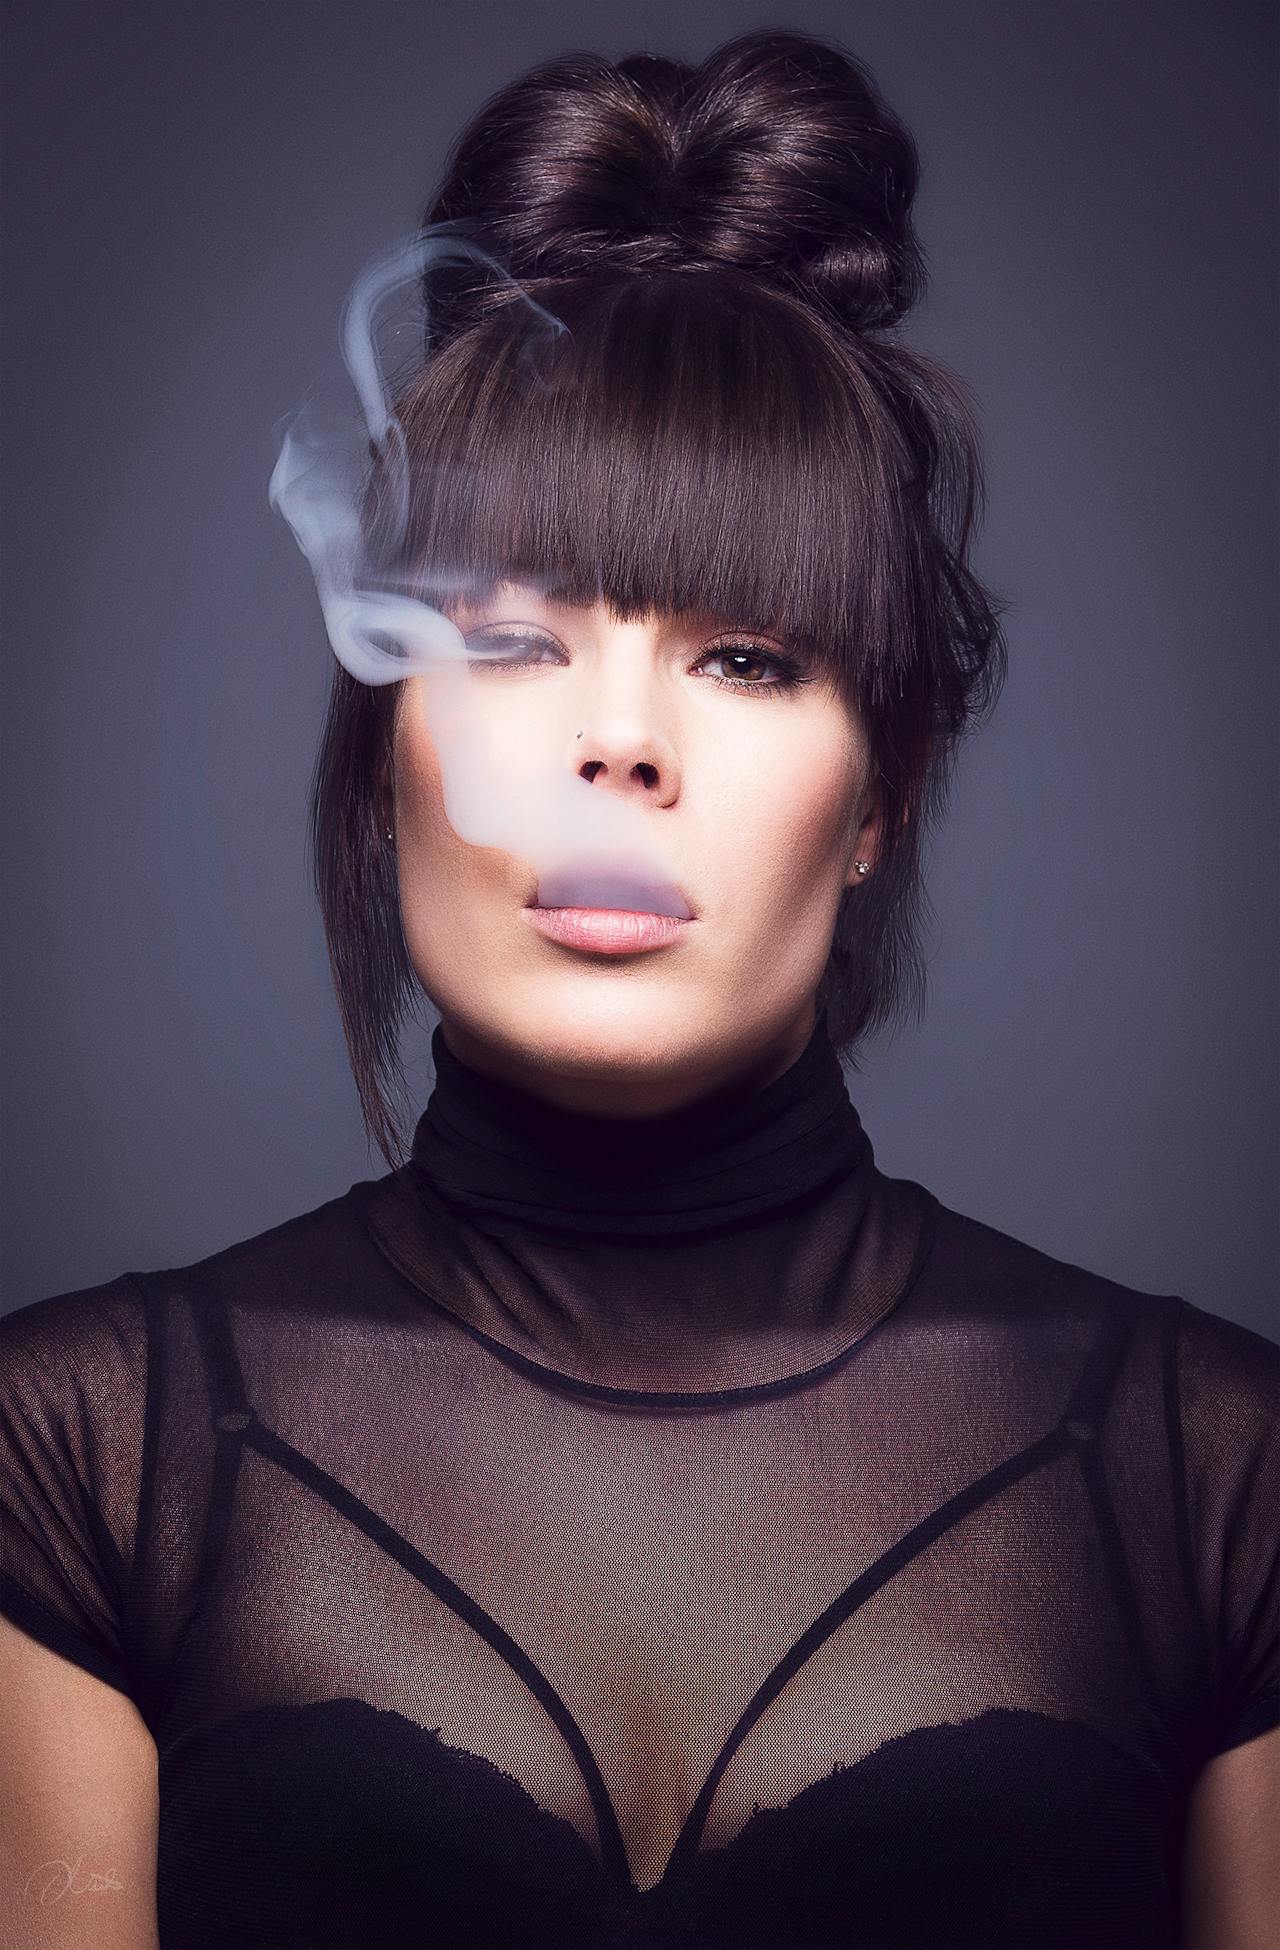 A portrait of a woman exhaling vapor